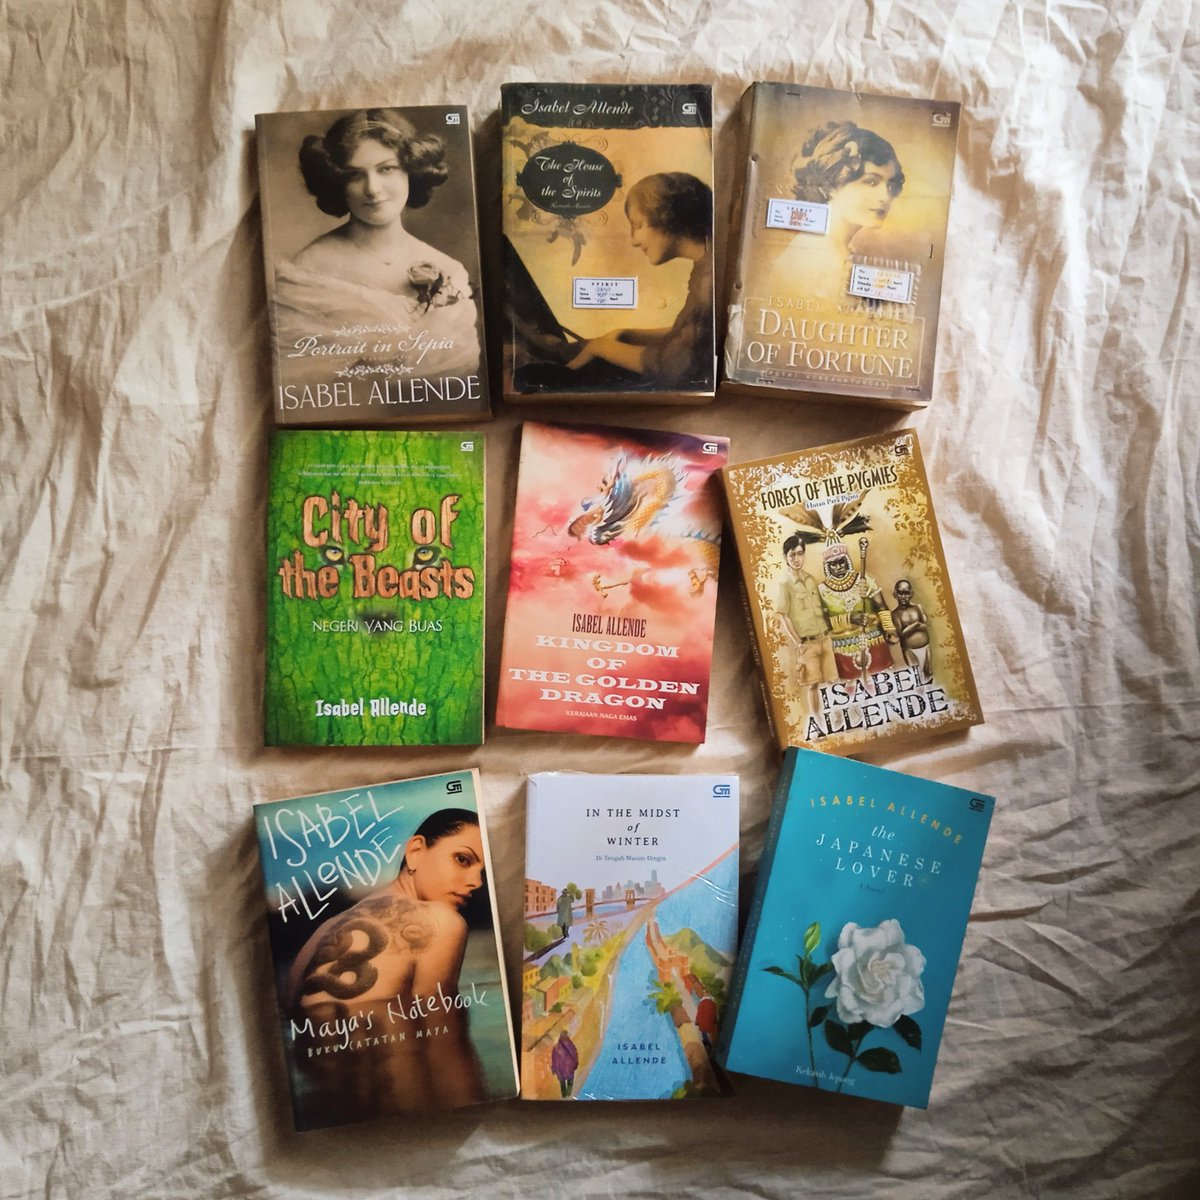 Ini adalah karya-karya Isabel Allende versi terjemahan Bahasa Indonesia yang sepertinya aku sudah lengkap. Sepertinya ya. Kalau ada judul yang belum aku punya, tolong kasih tau 😁 Kapan dibacaaaa??? Kapan-kapaaaannnn 🤣🤣🤣

#isabelallende 
#bookstagram